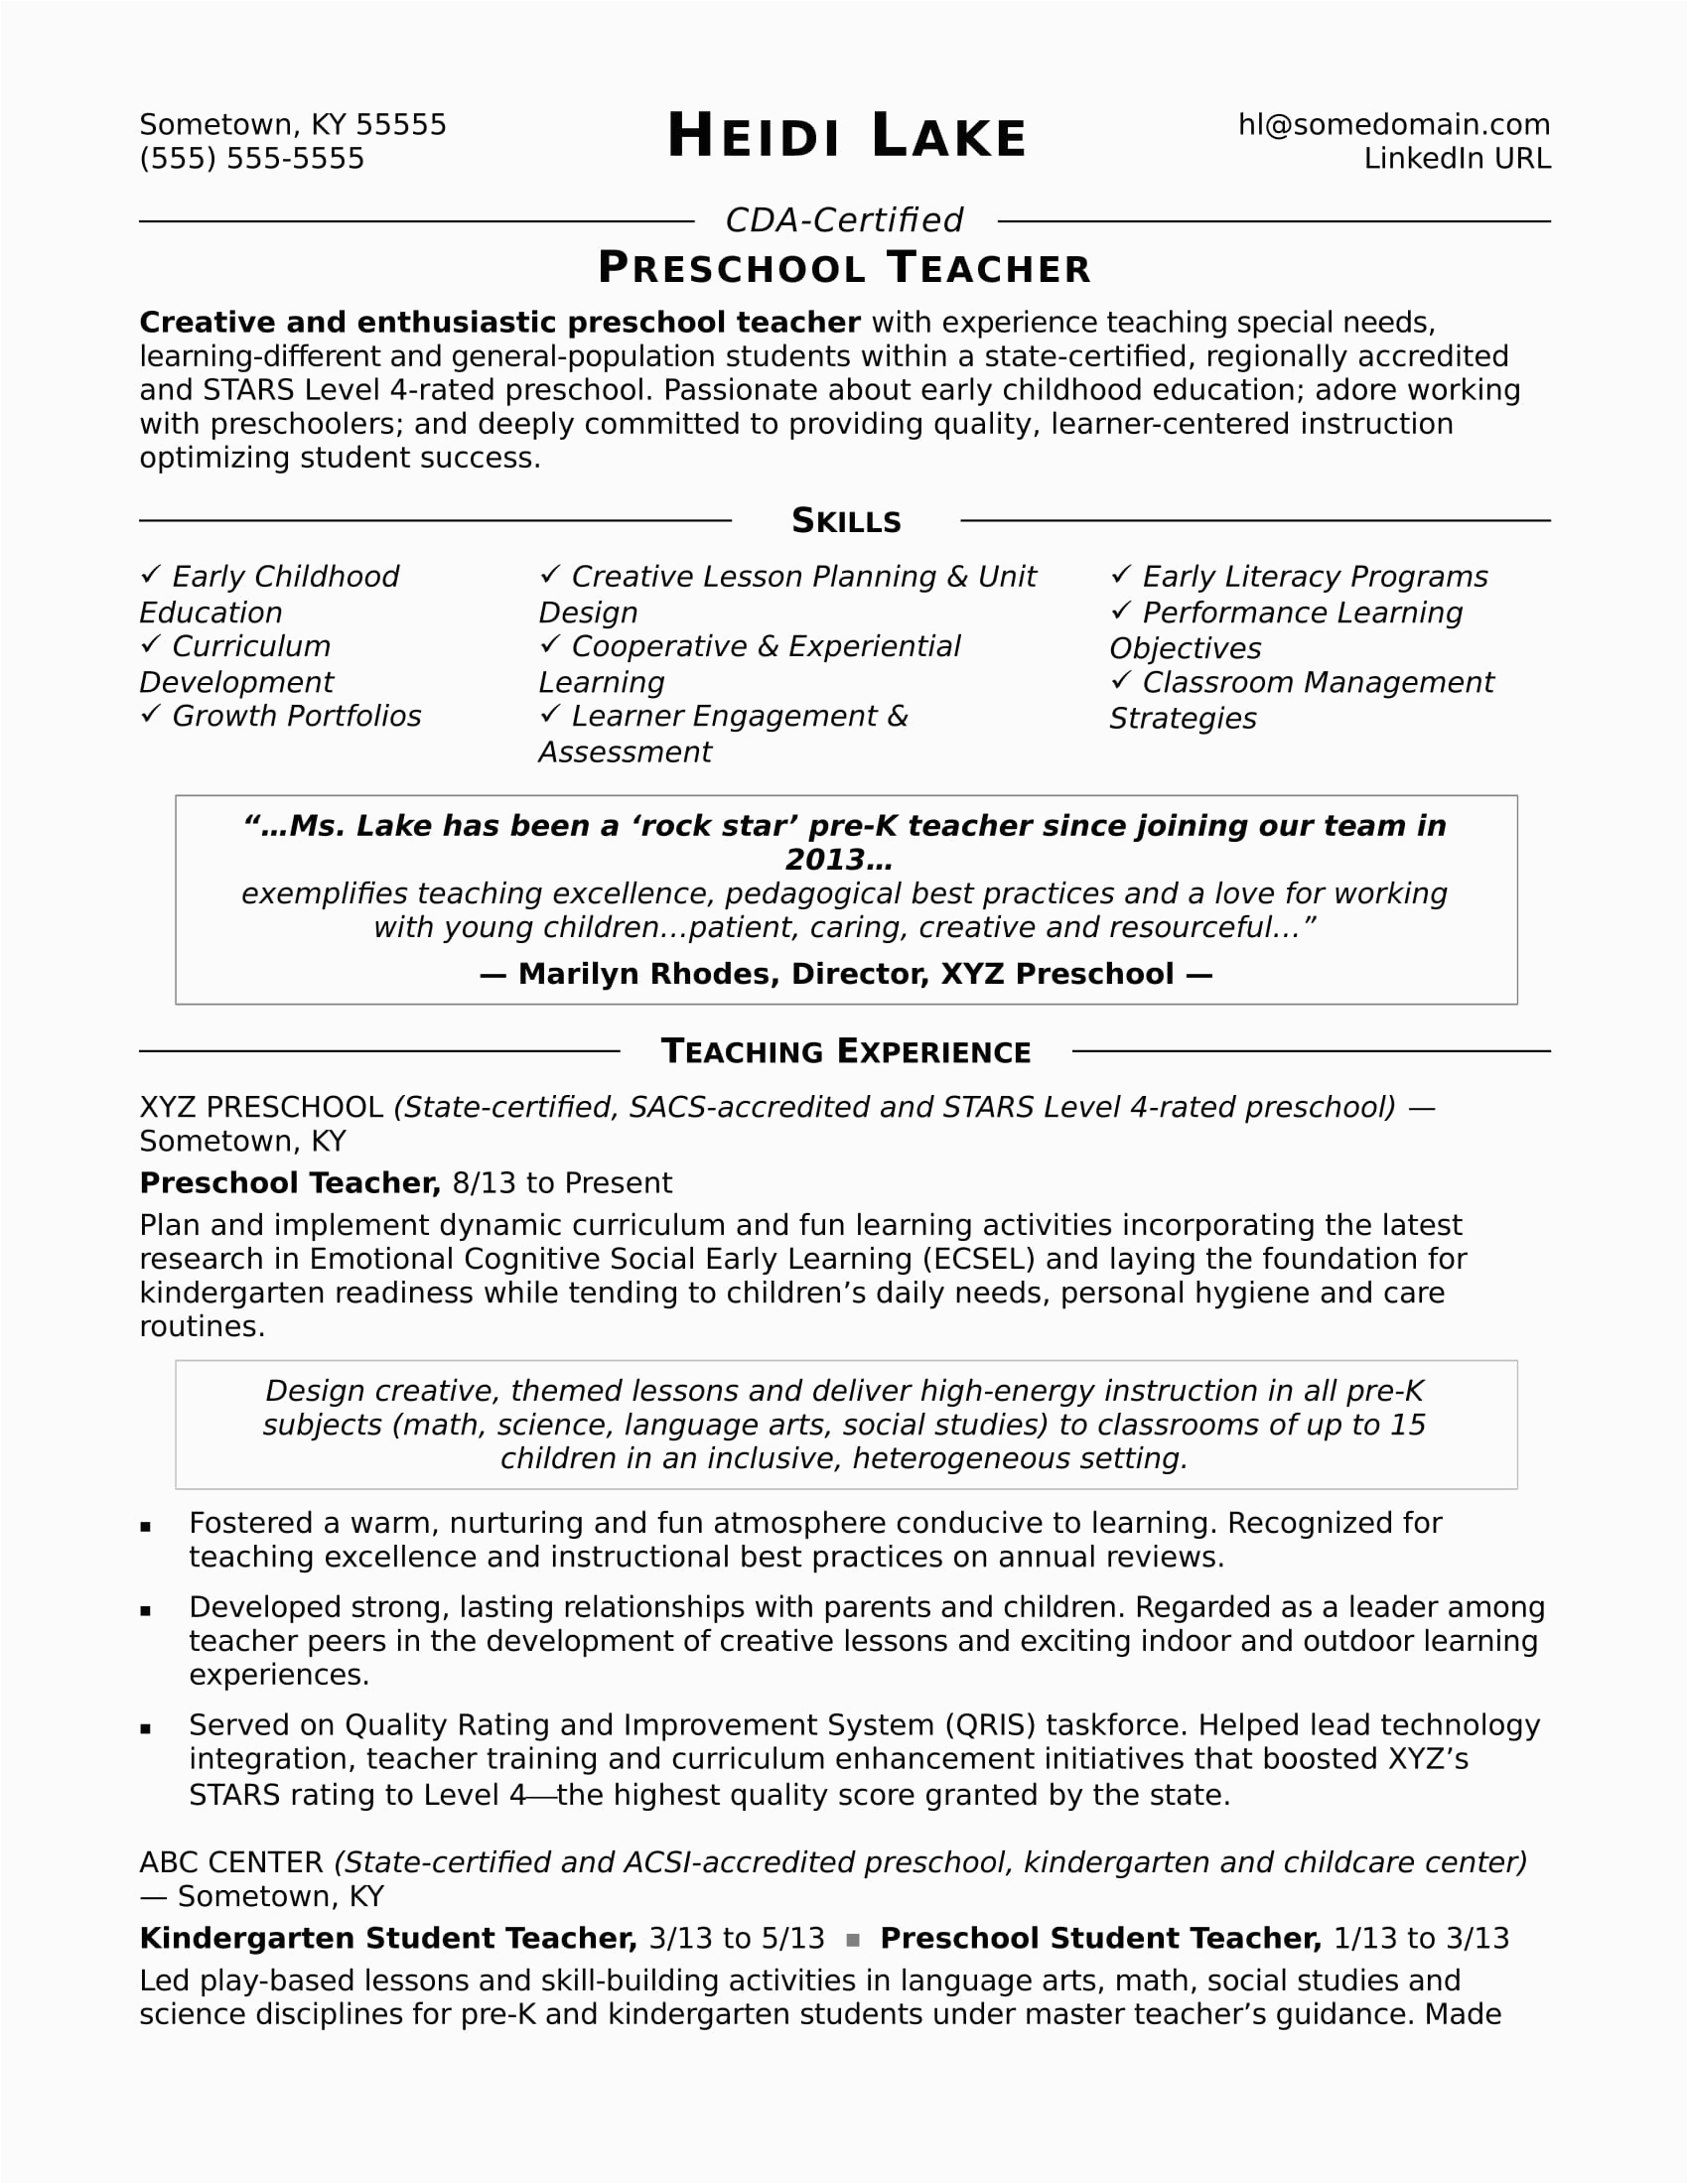 Sample Resume for Preschool Teacher Aide Preschool Teacher Resume Sample